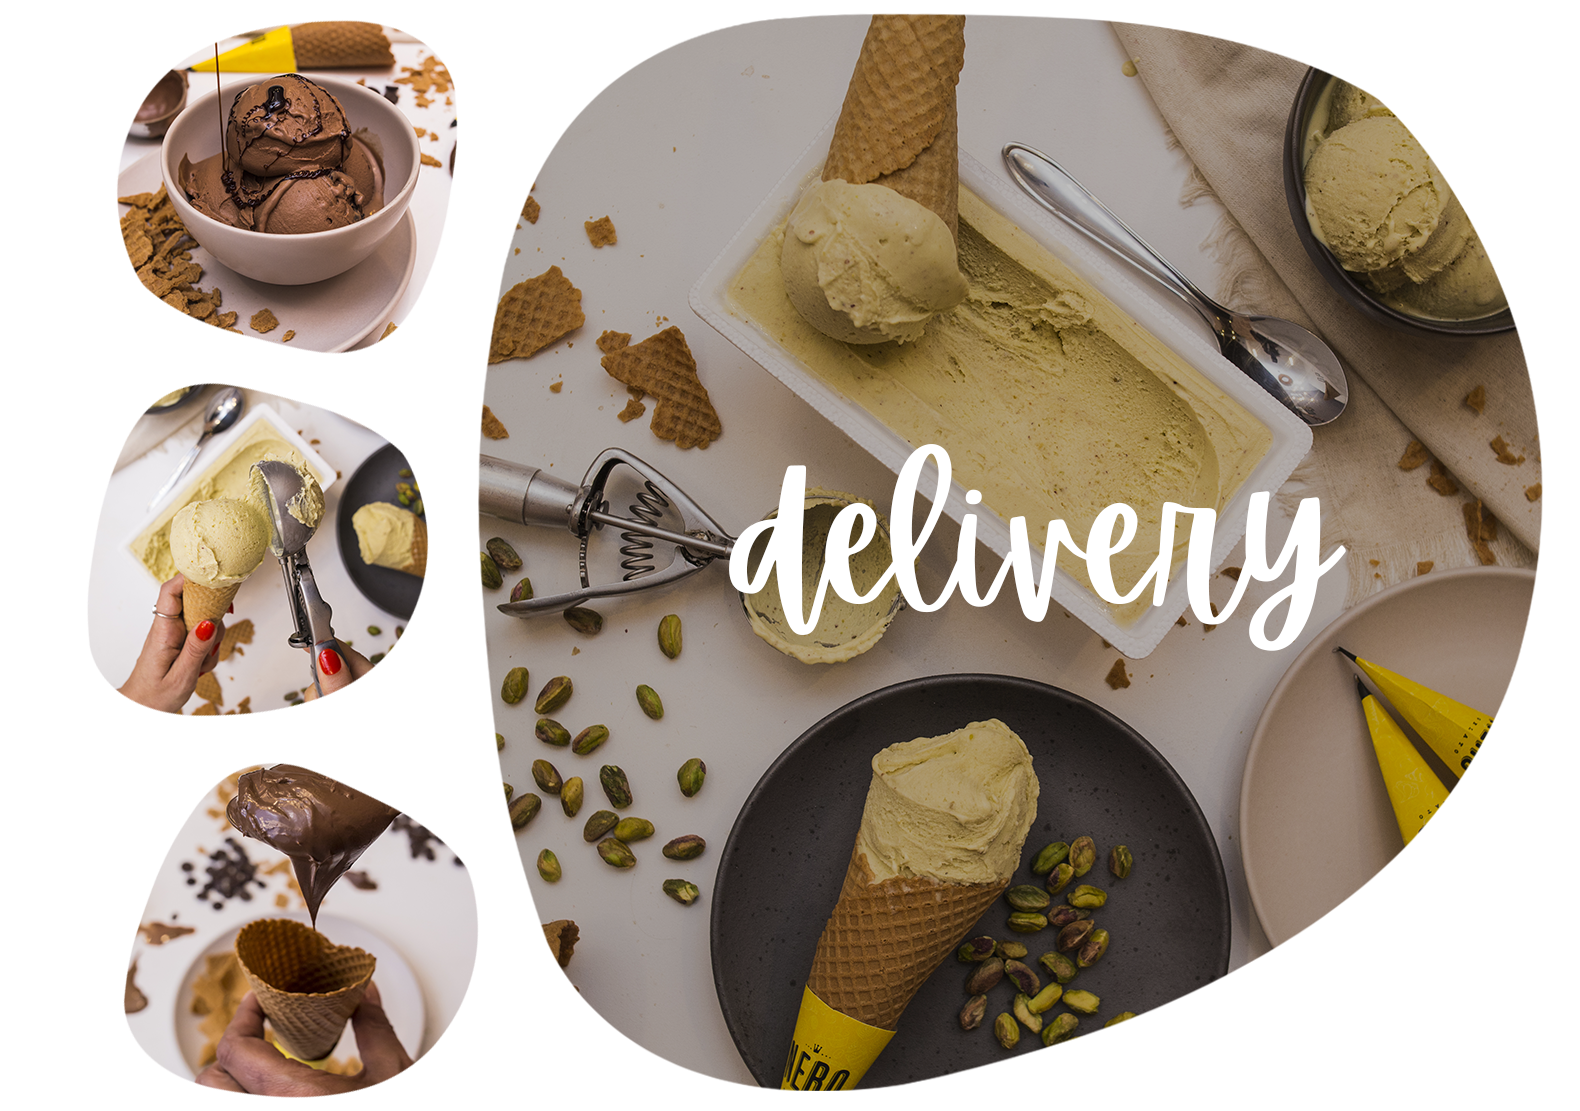 nero-gelato-delivery-produtos